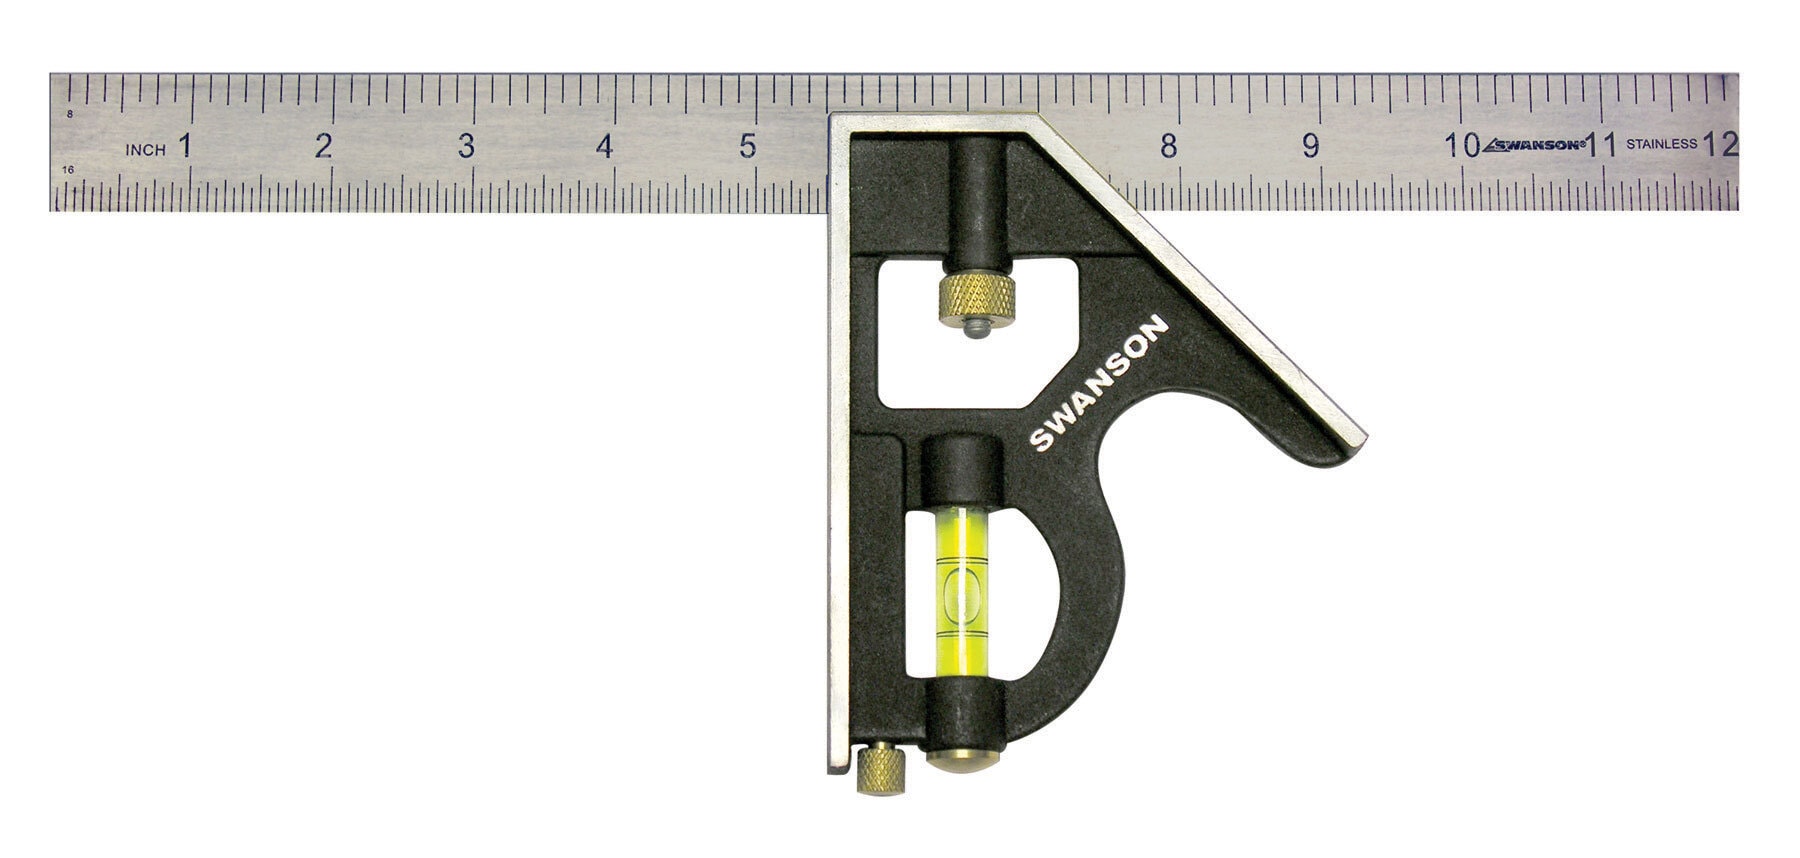 Hardwood Tri Square Set Adjust Angle Slide Ruler Frame Combination 12'' 